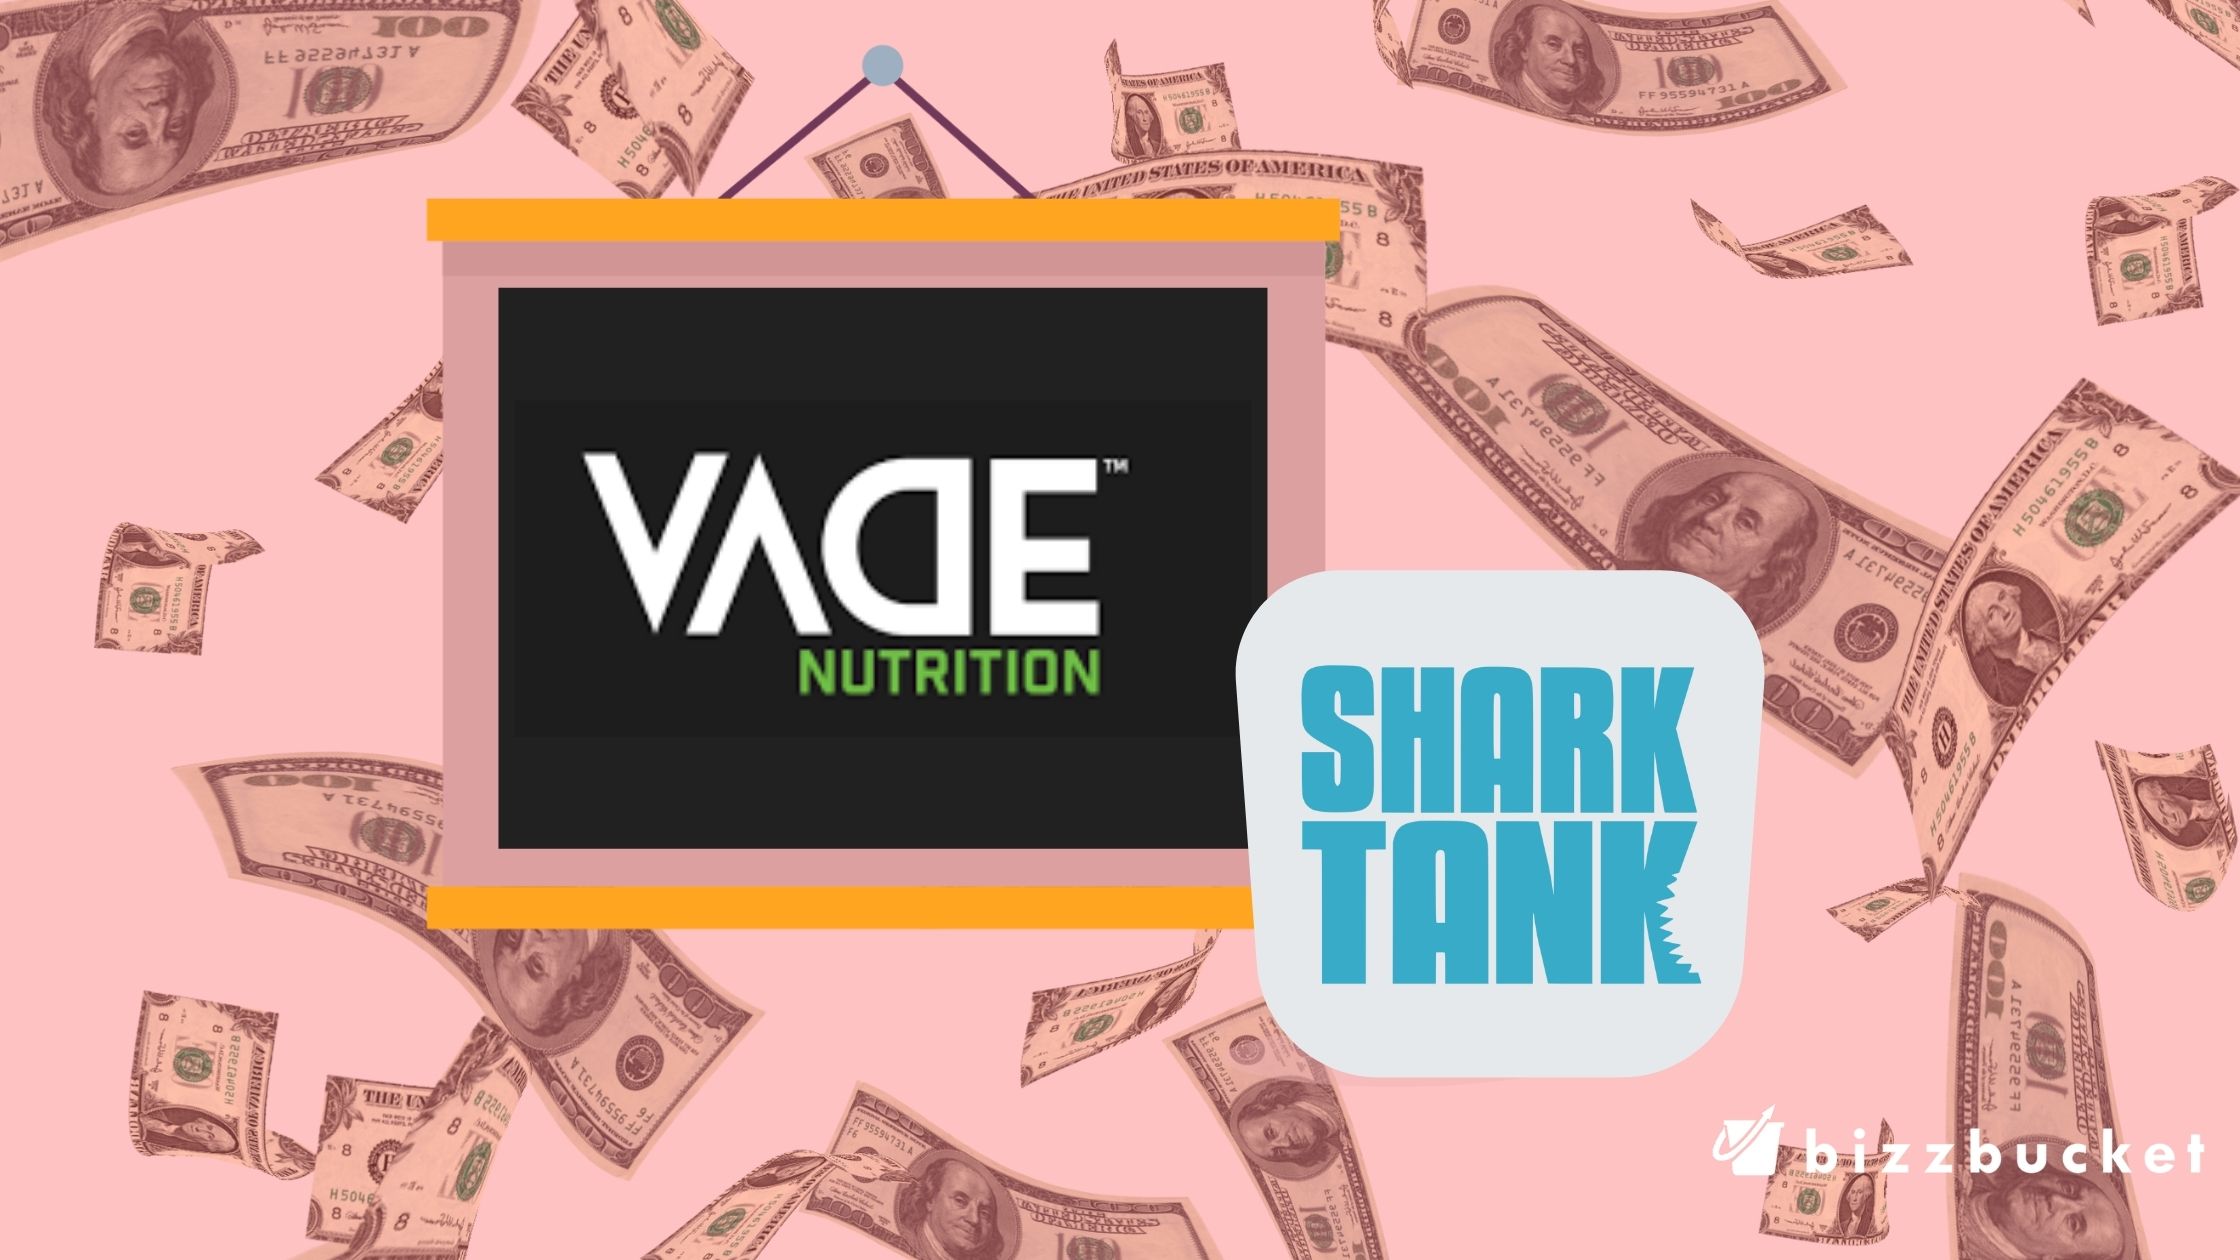 Vade Nutrition Shark Tank update